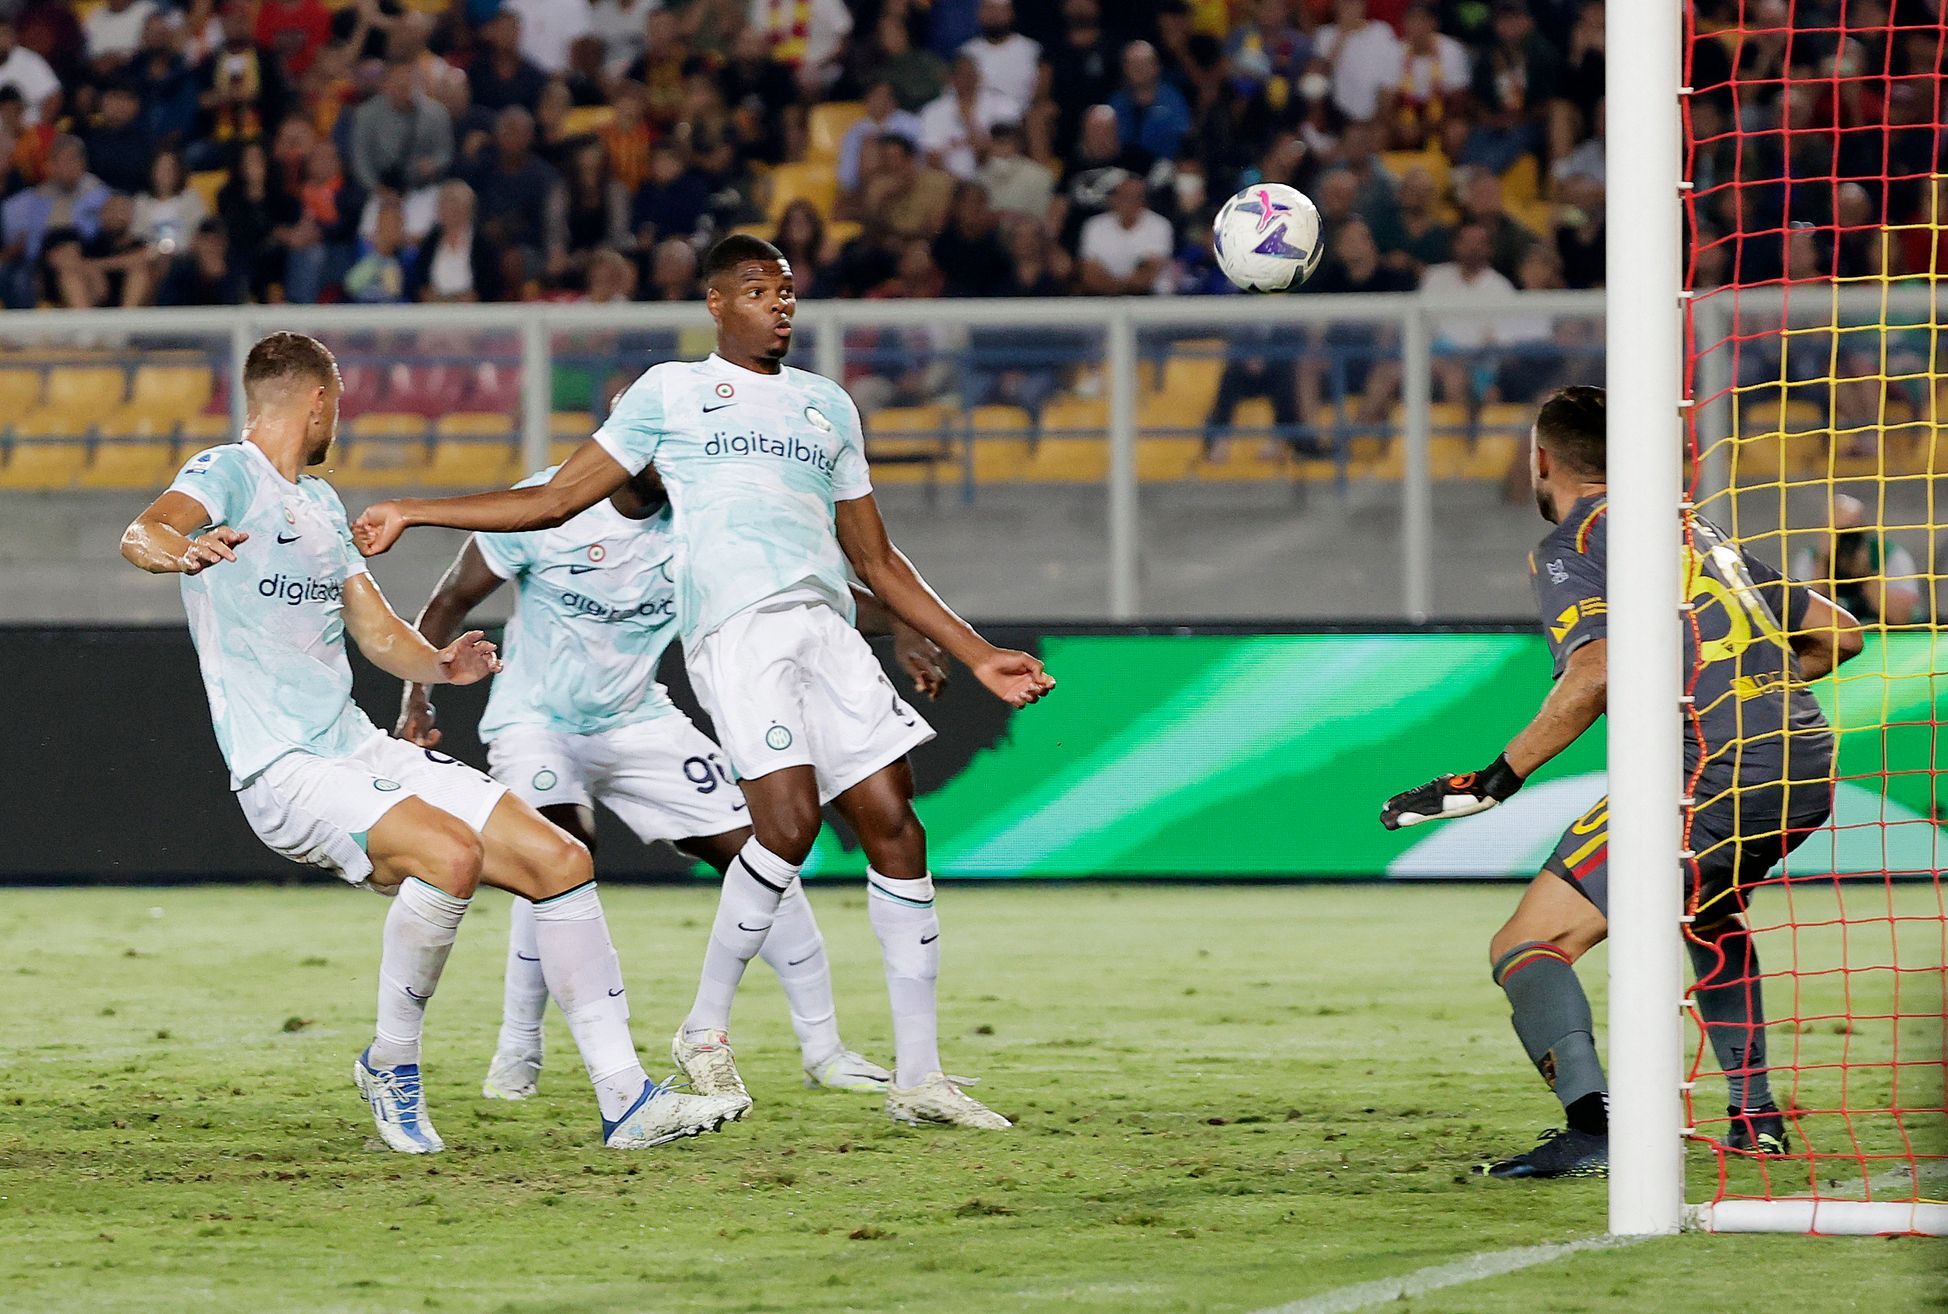 L’Inter ha vinto a Lecce dopo un gol di ventre all’ultimo minuto.  L’infortunato Samek non gioca